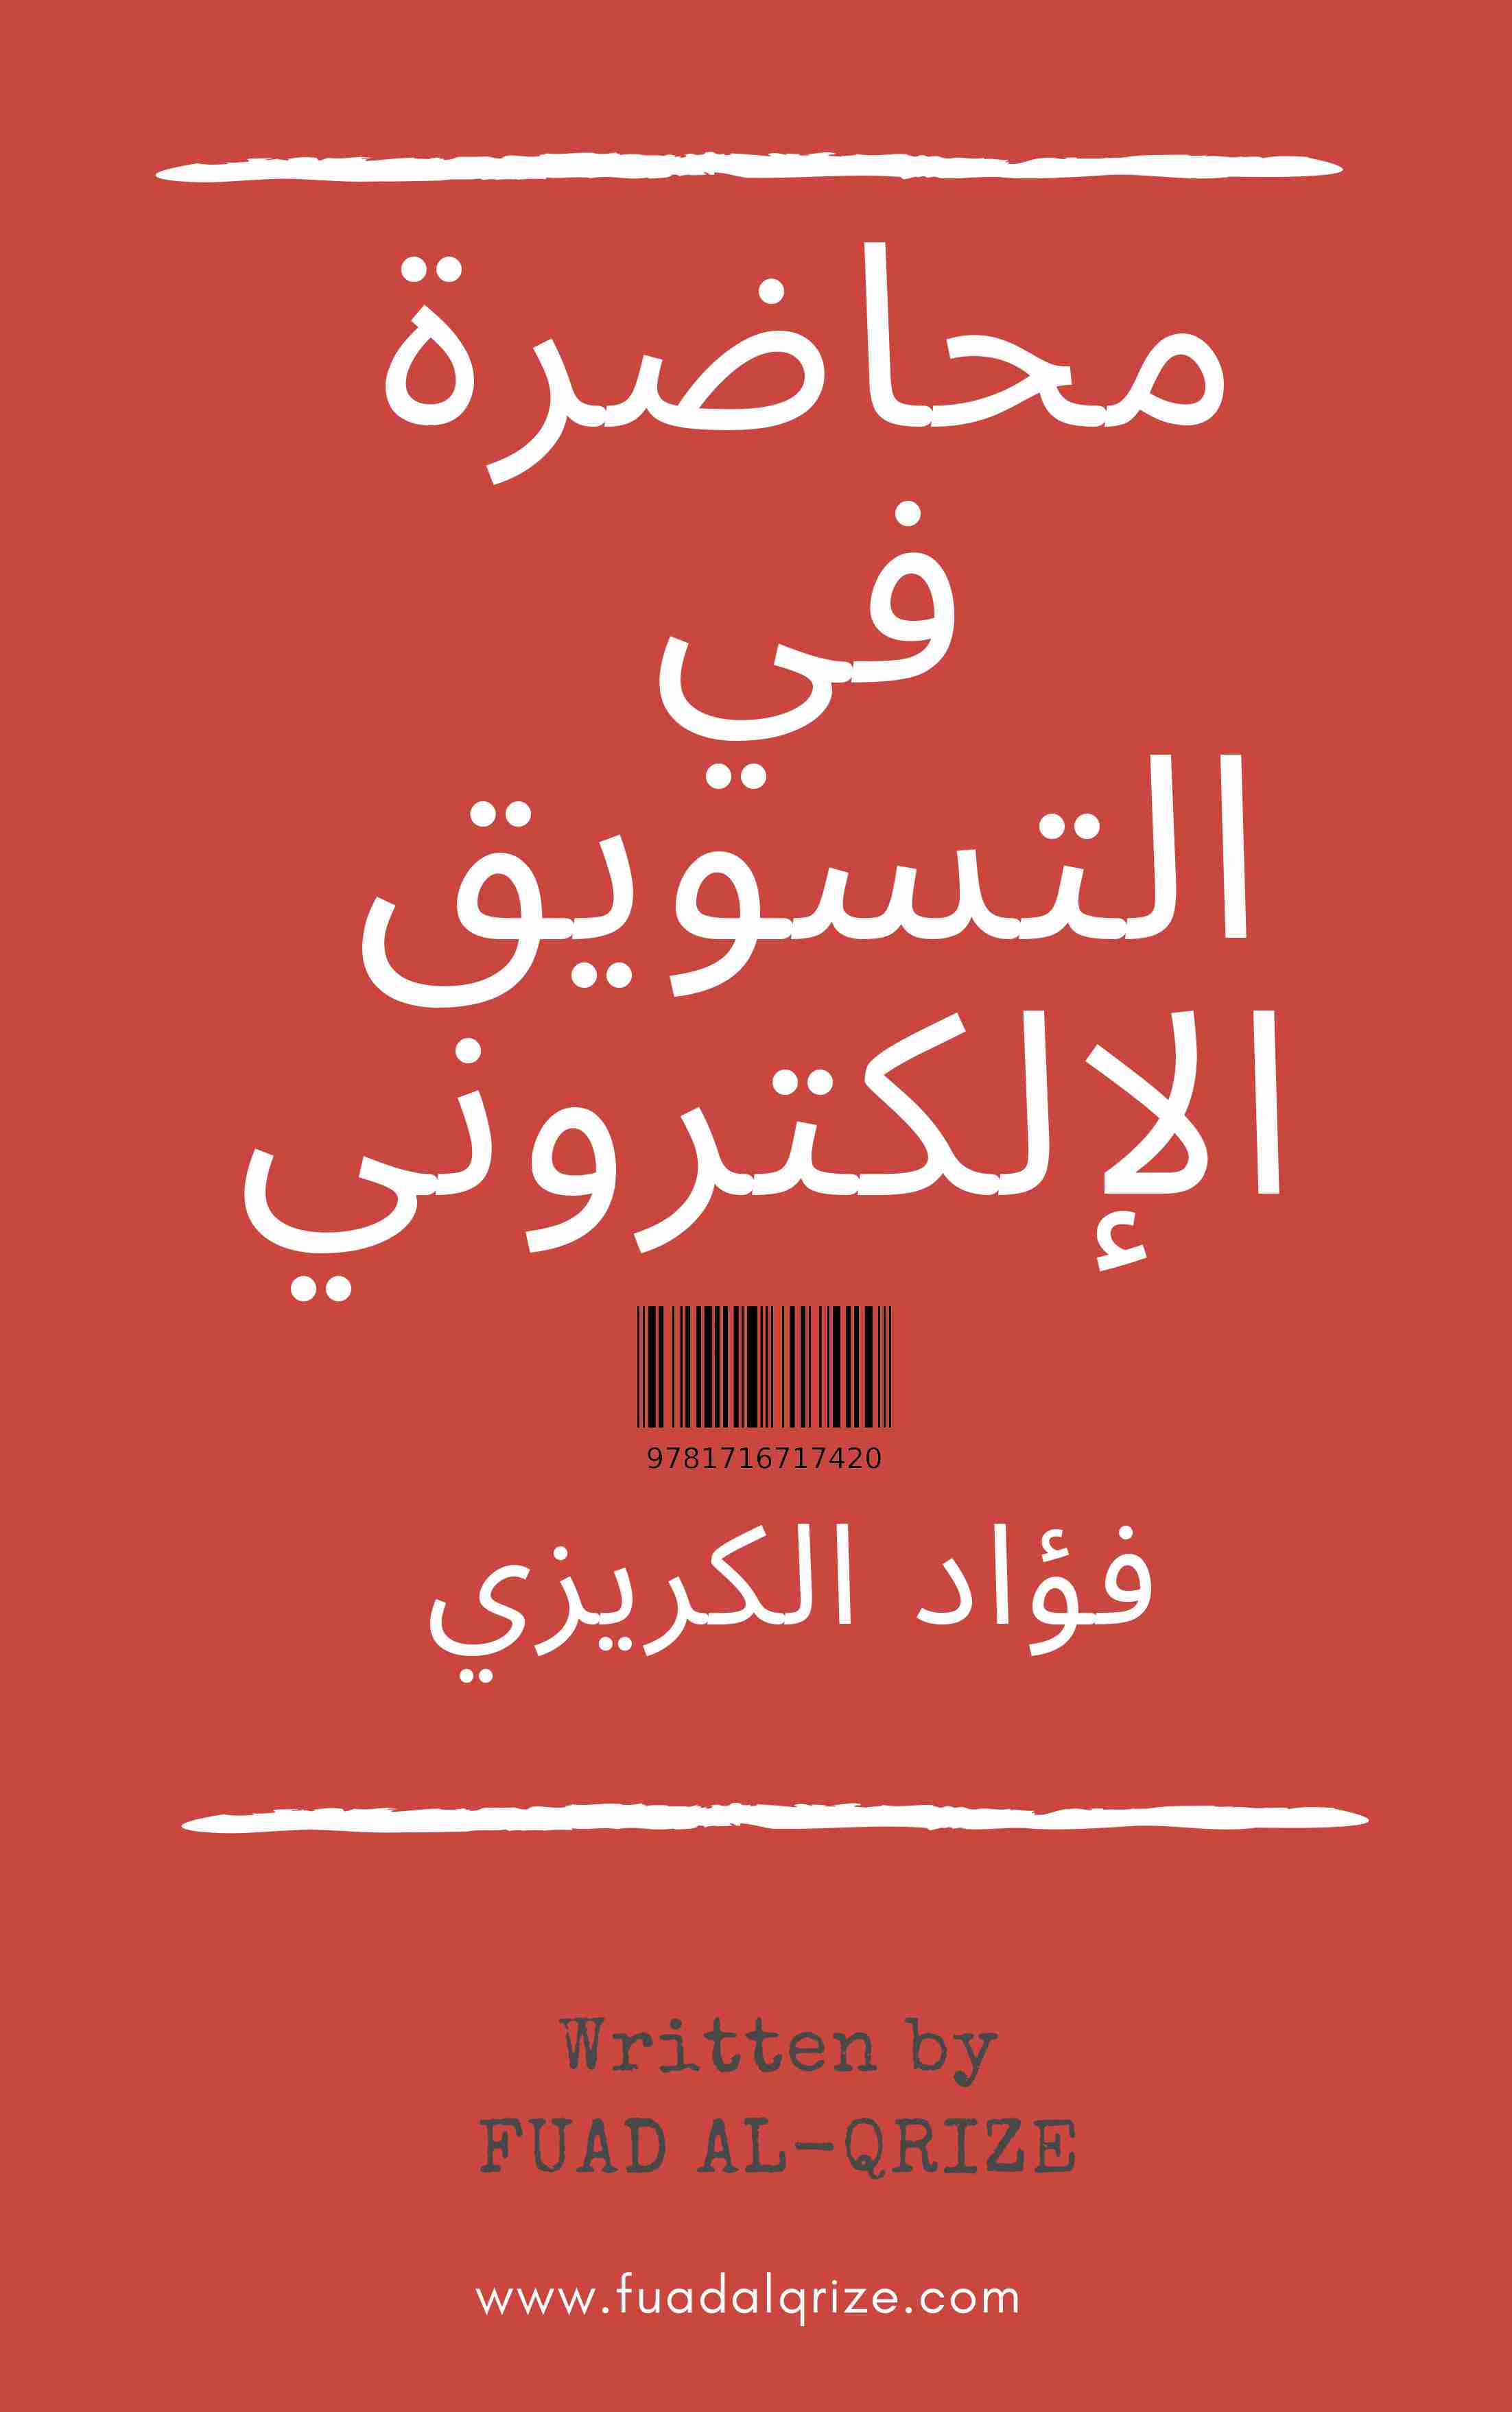 كتاب محاضرة في التسويق الإلكتروني لـ فؤاد الكريزي